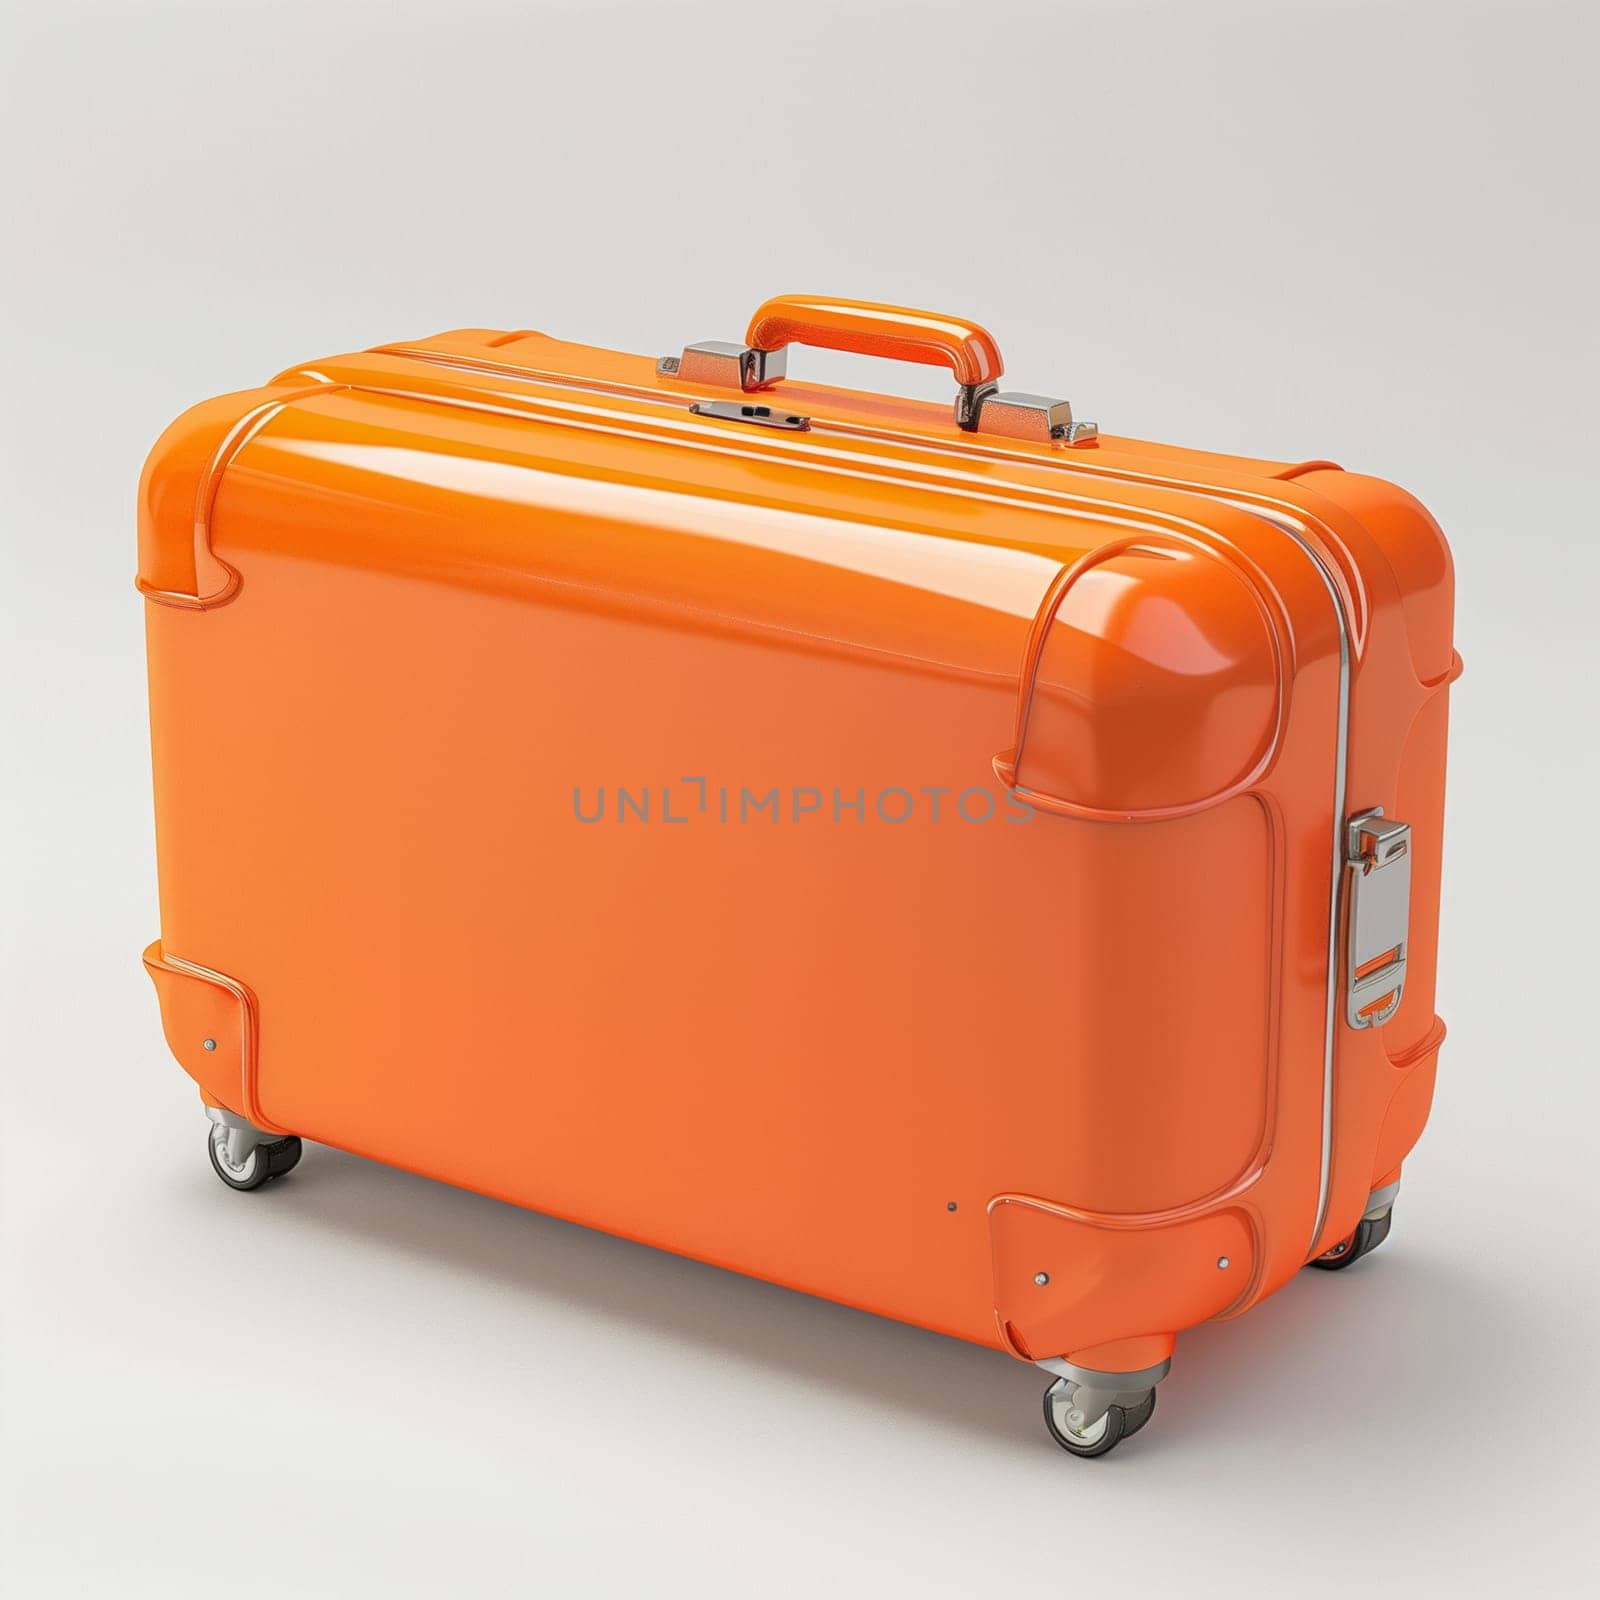 Orange Luggage on White Floor by Sd28DimoN_1976